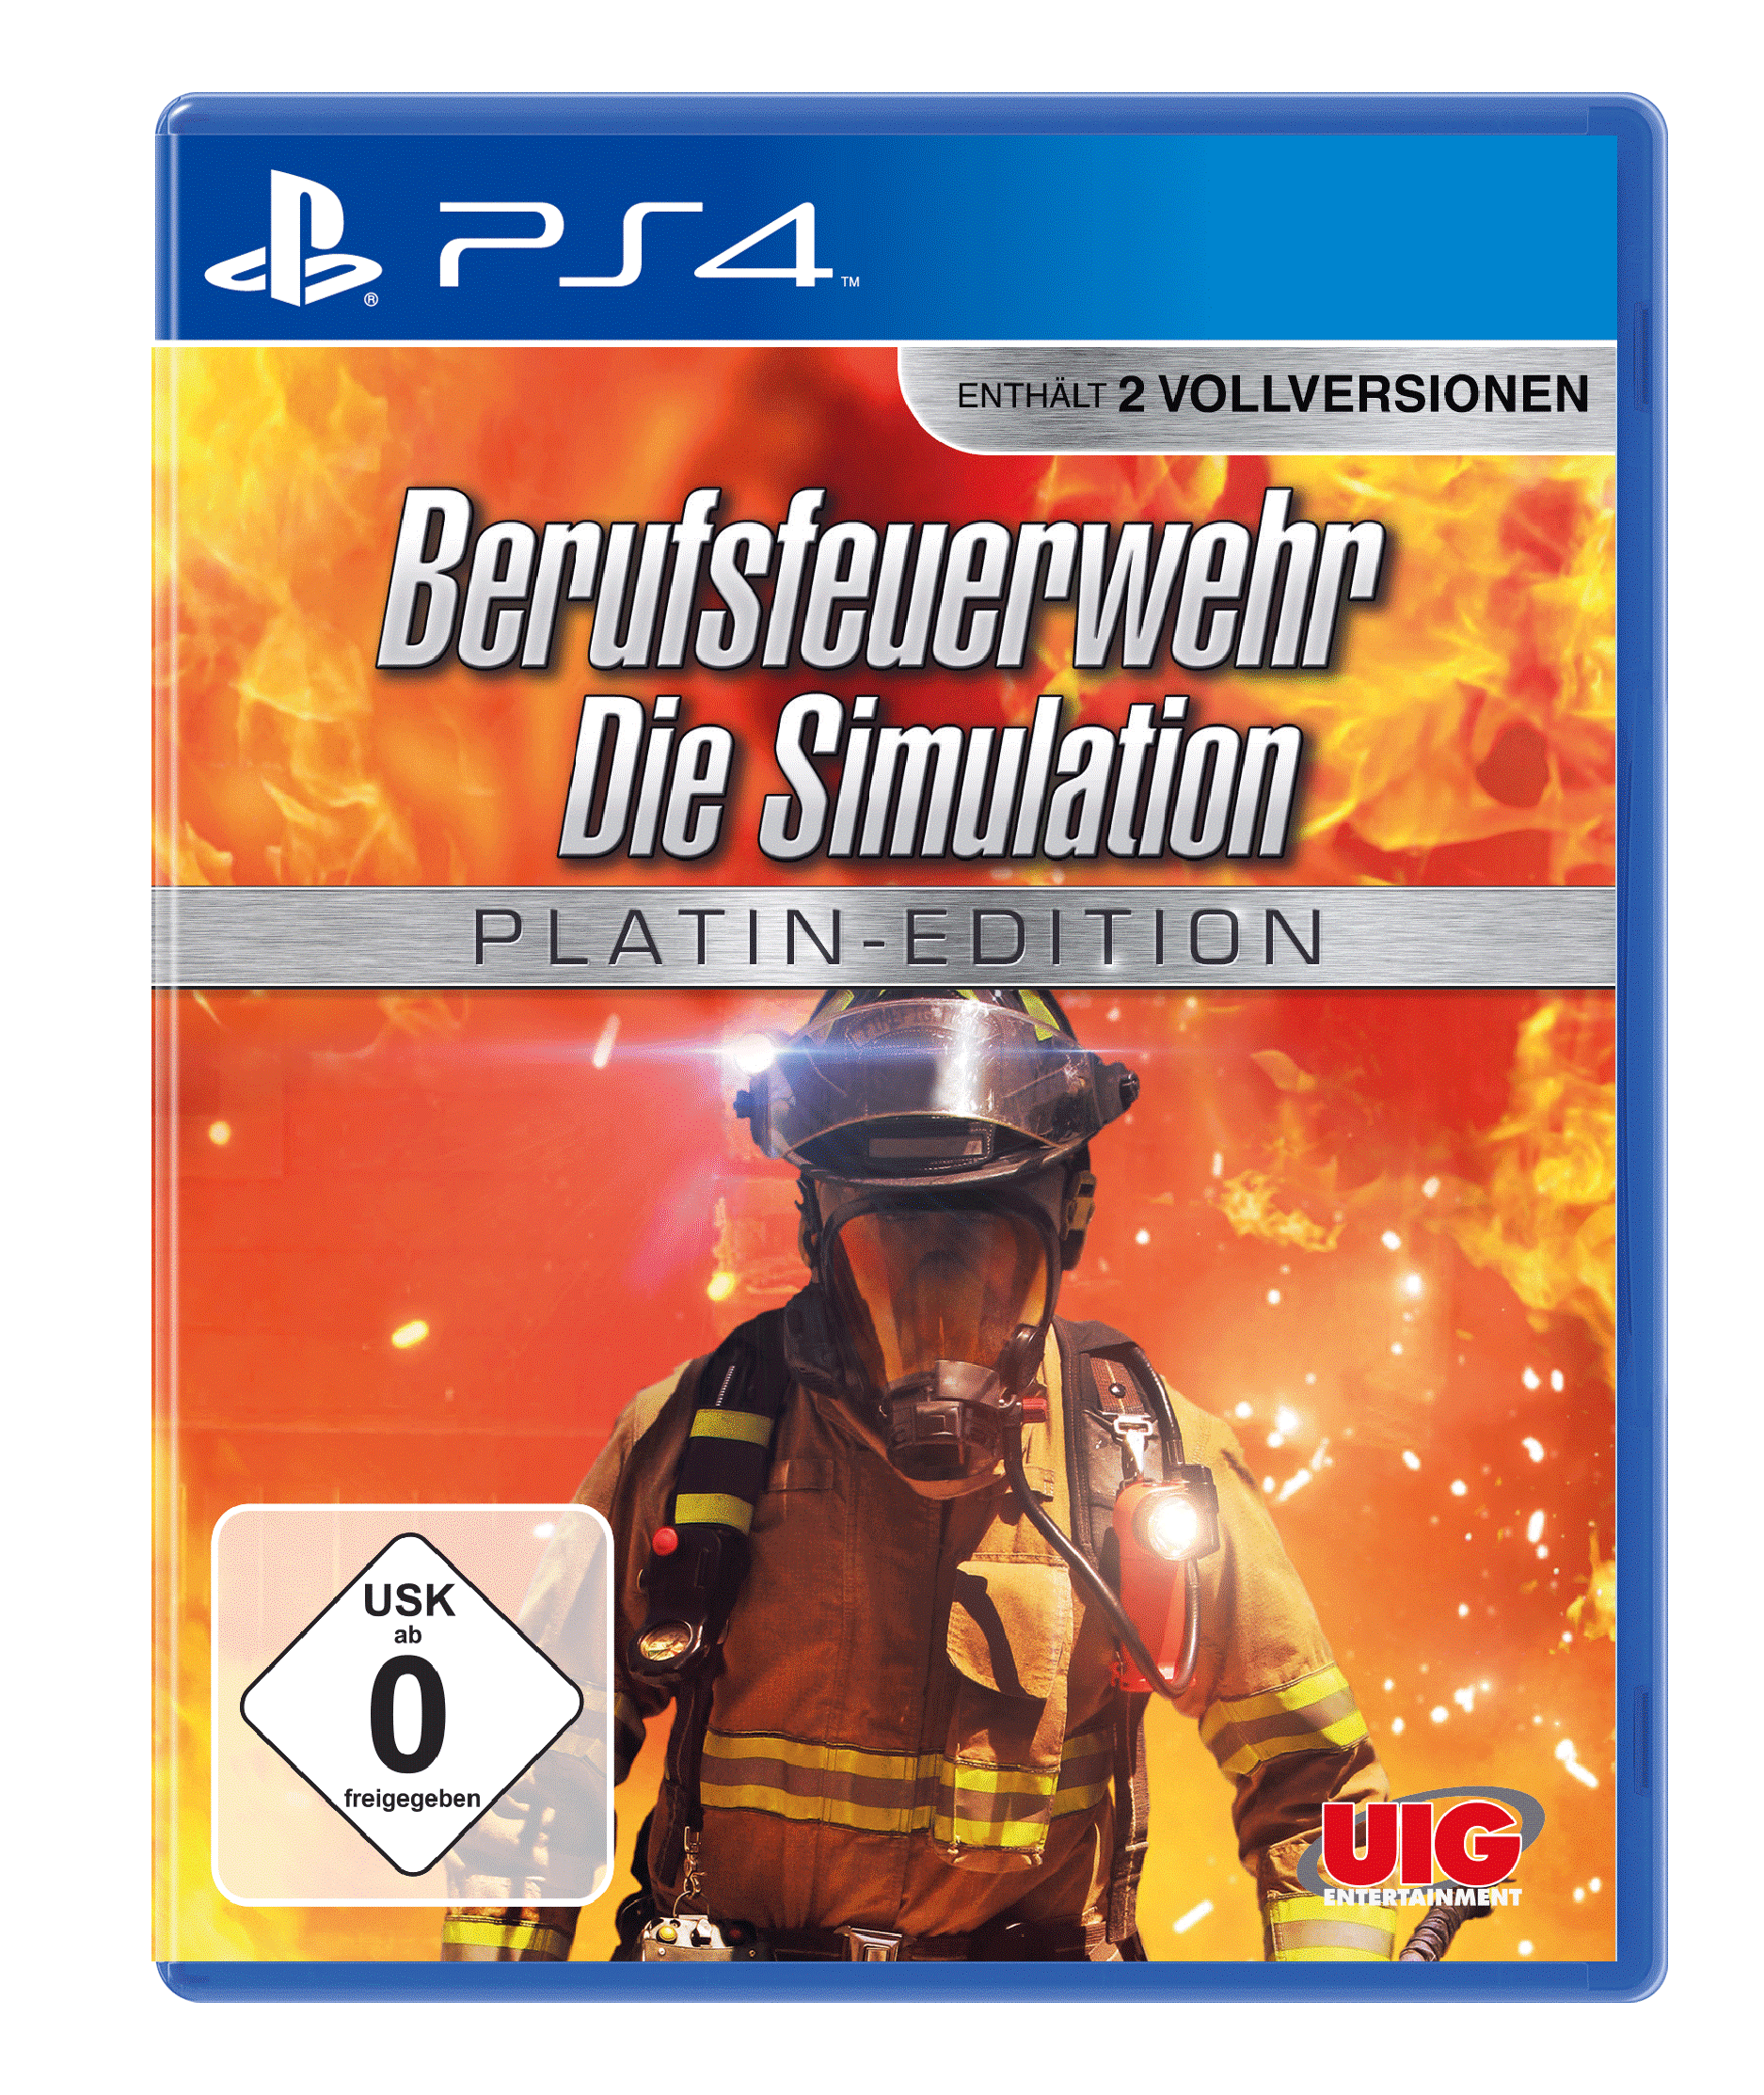 Berufsfeuerwehr: Die Platin 4] - Edition - Simulation [PlayStation